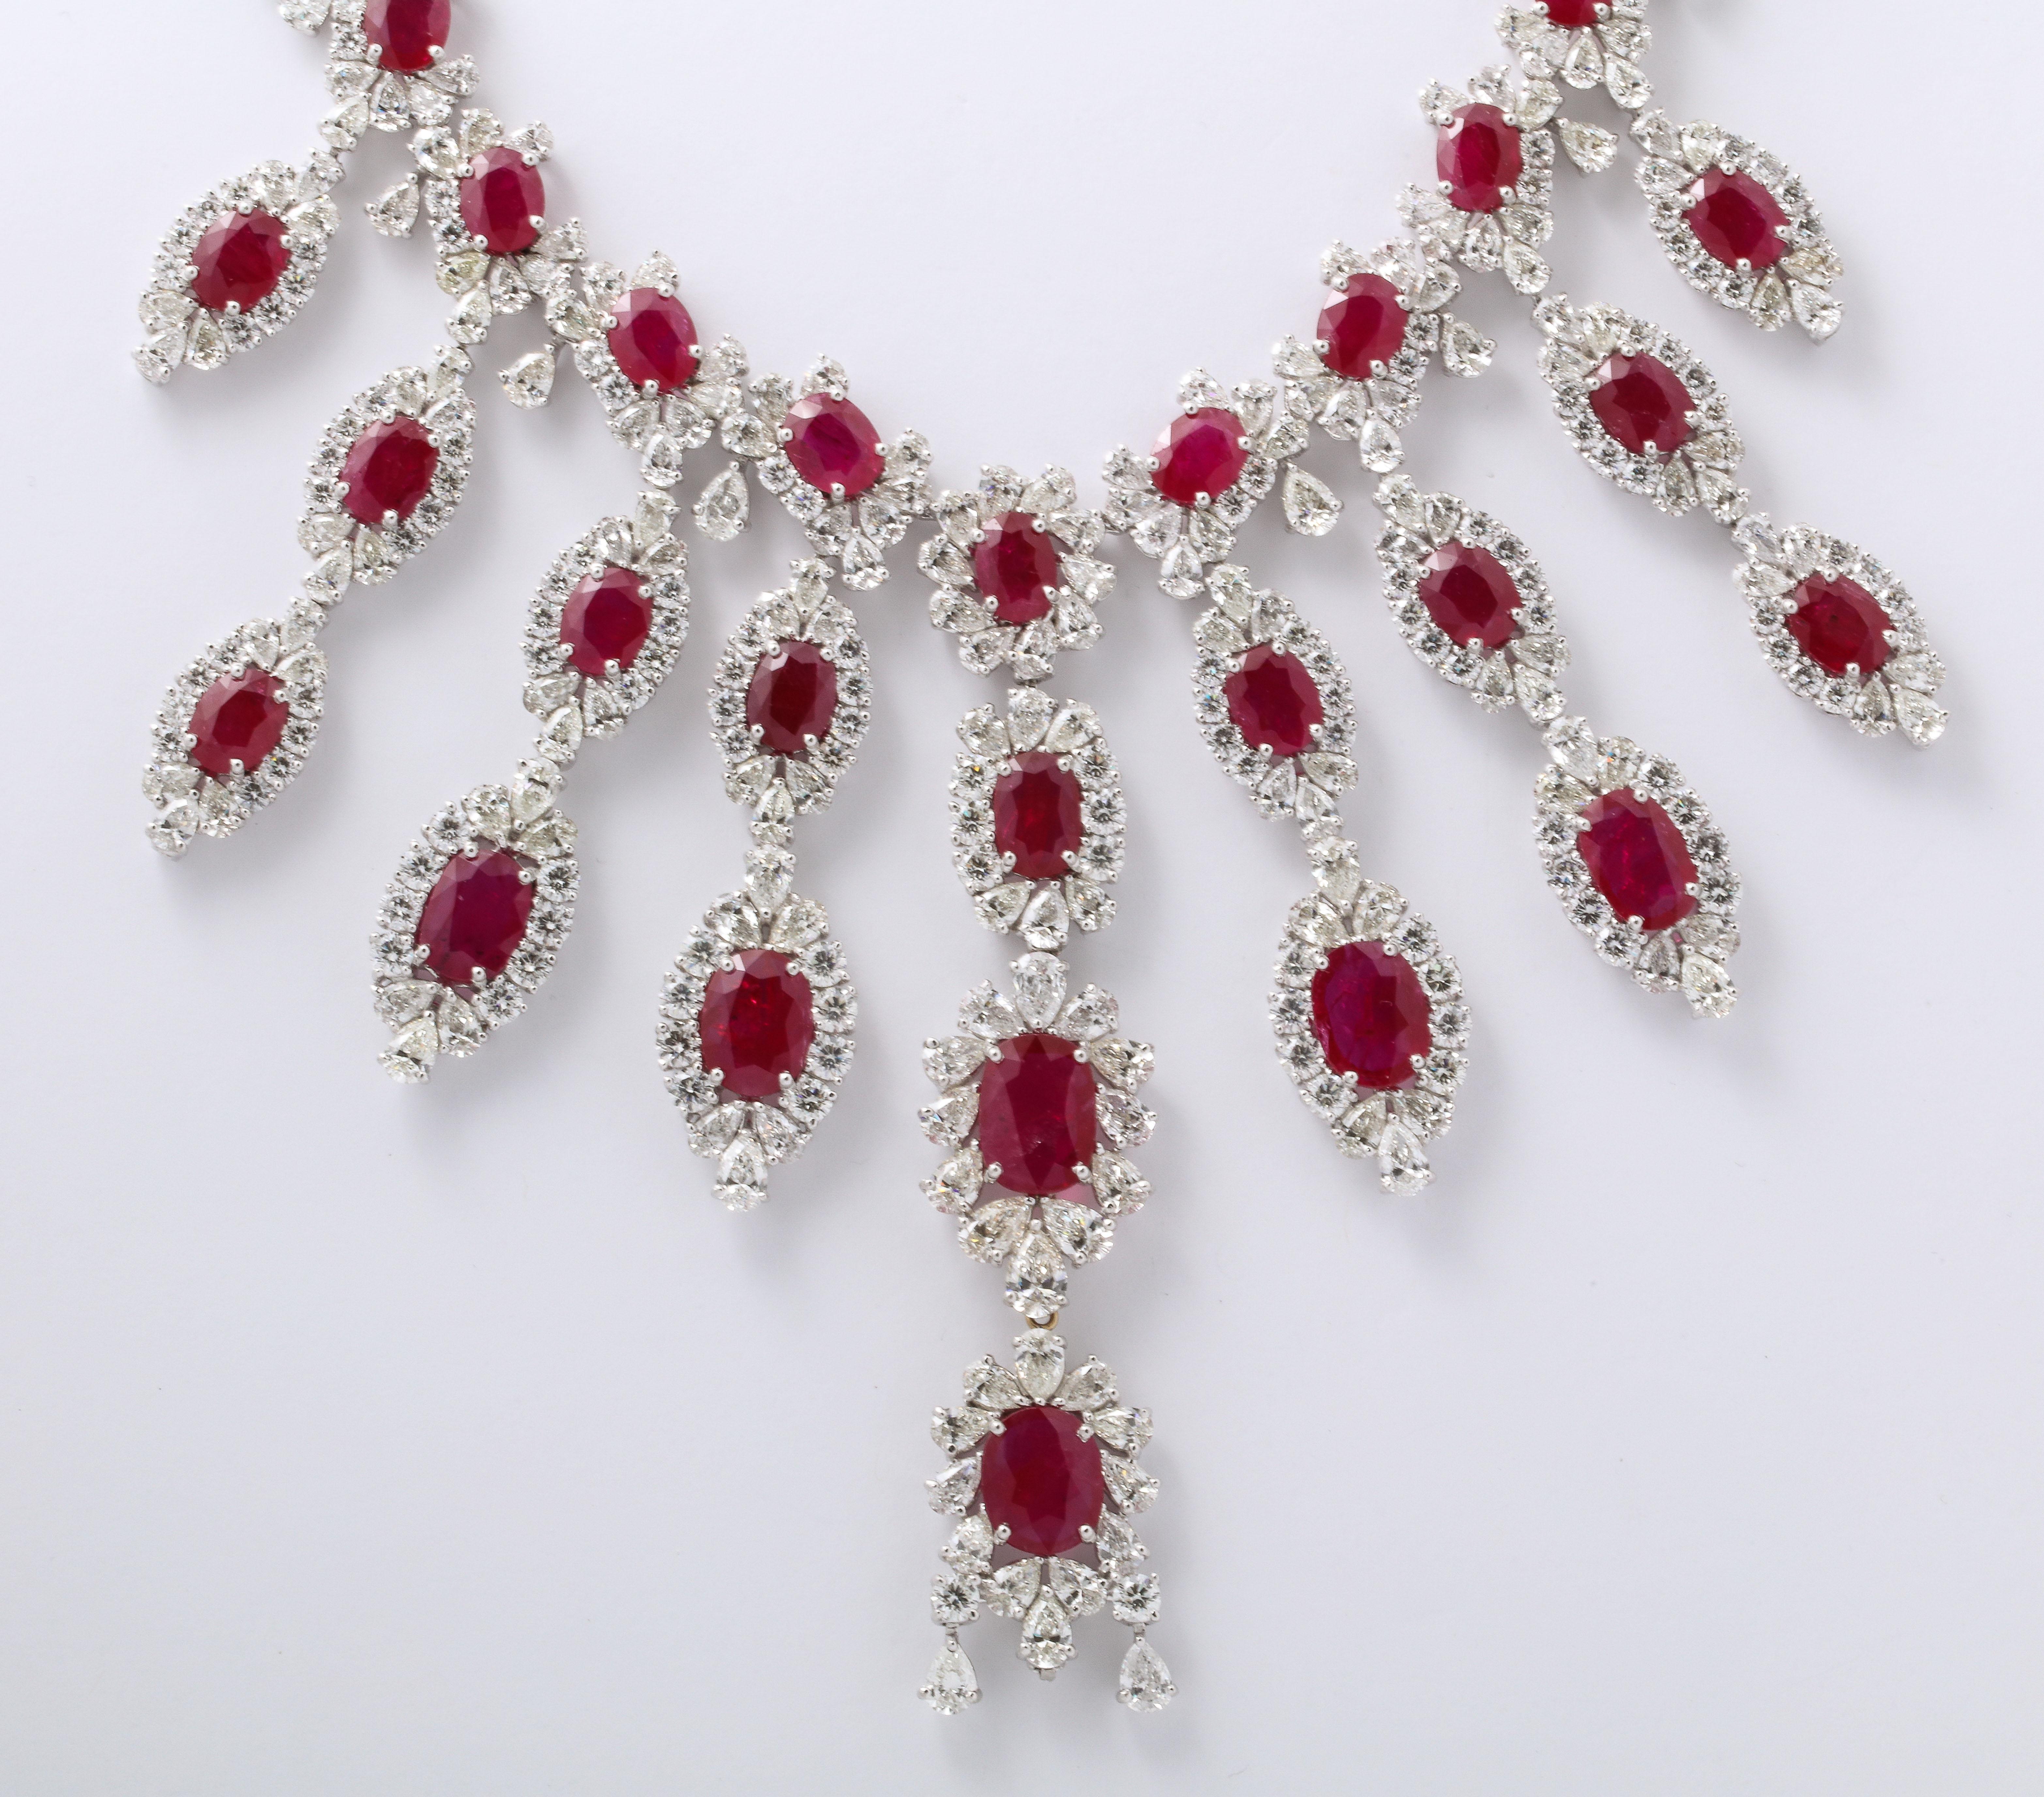 
Un GRAND collier de rubis et de diamants. 

Plus de 100 carats de rubis certifié 